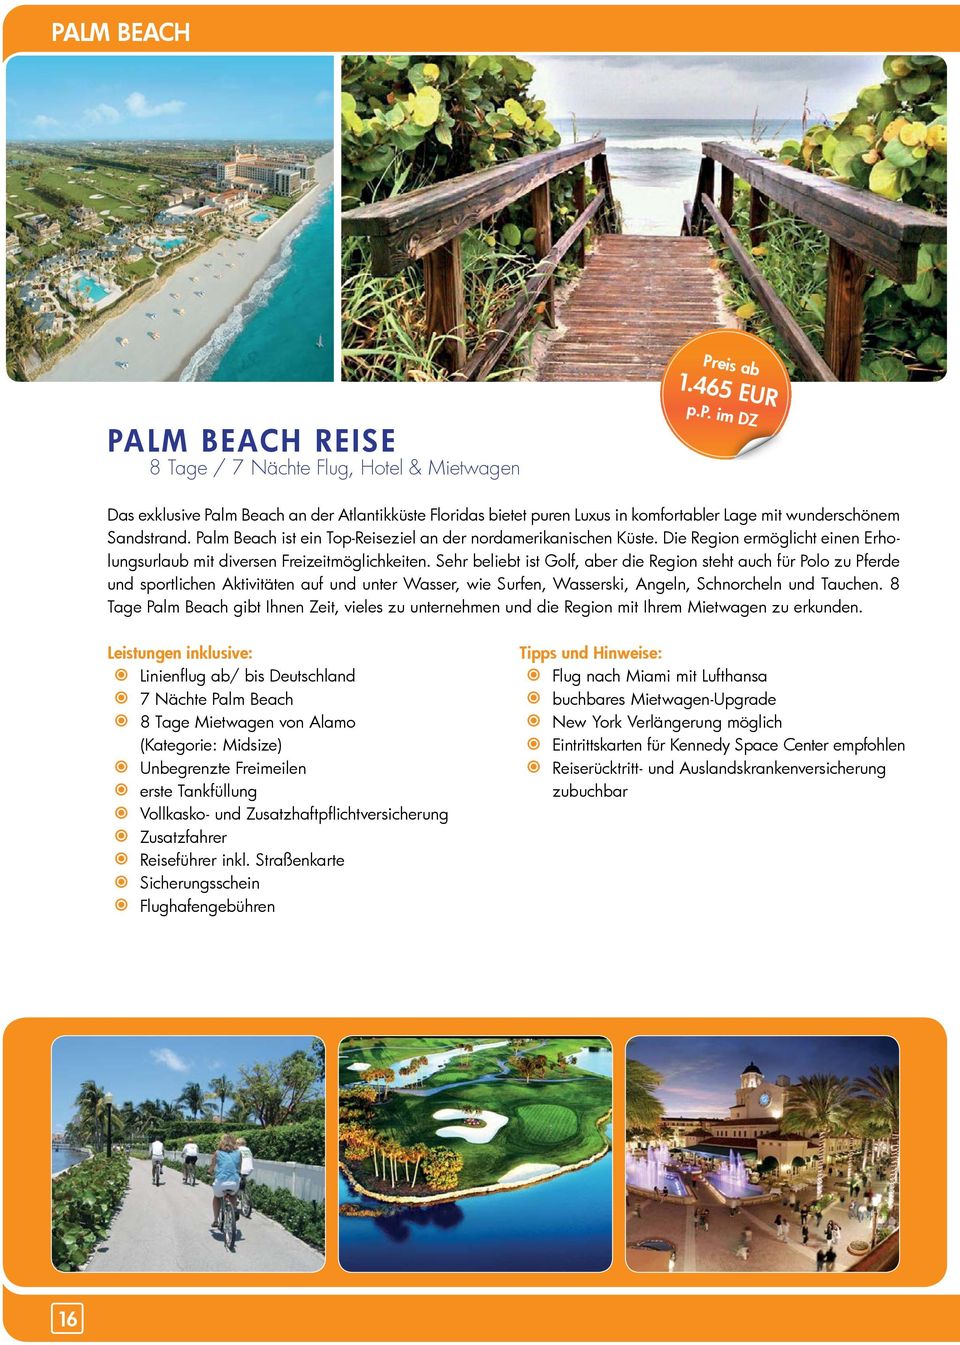 Palm Beach ist ein Top-Reiseziel an der nordamerikanischen Küste. Die Region ermöglicht einen Erholungsurlaub mit diversen Freizeitmöglichkeiten.